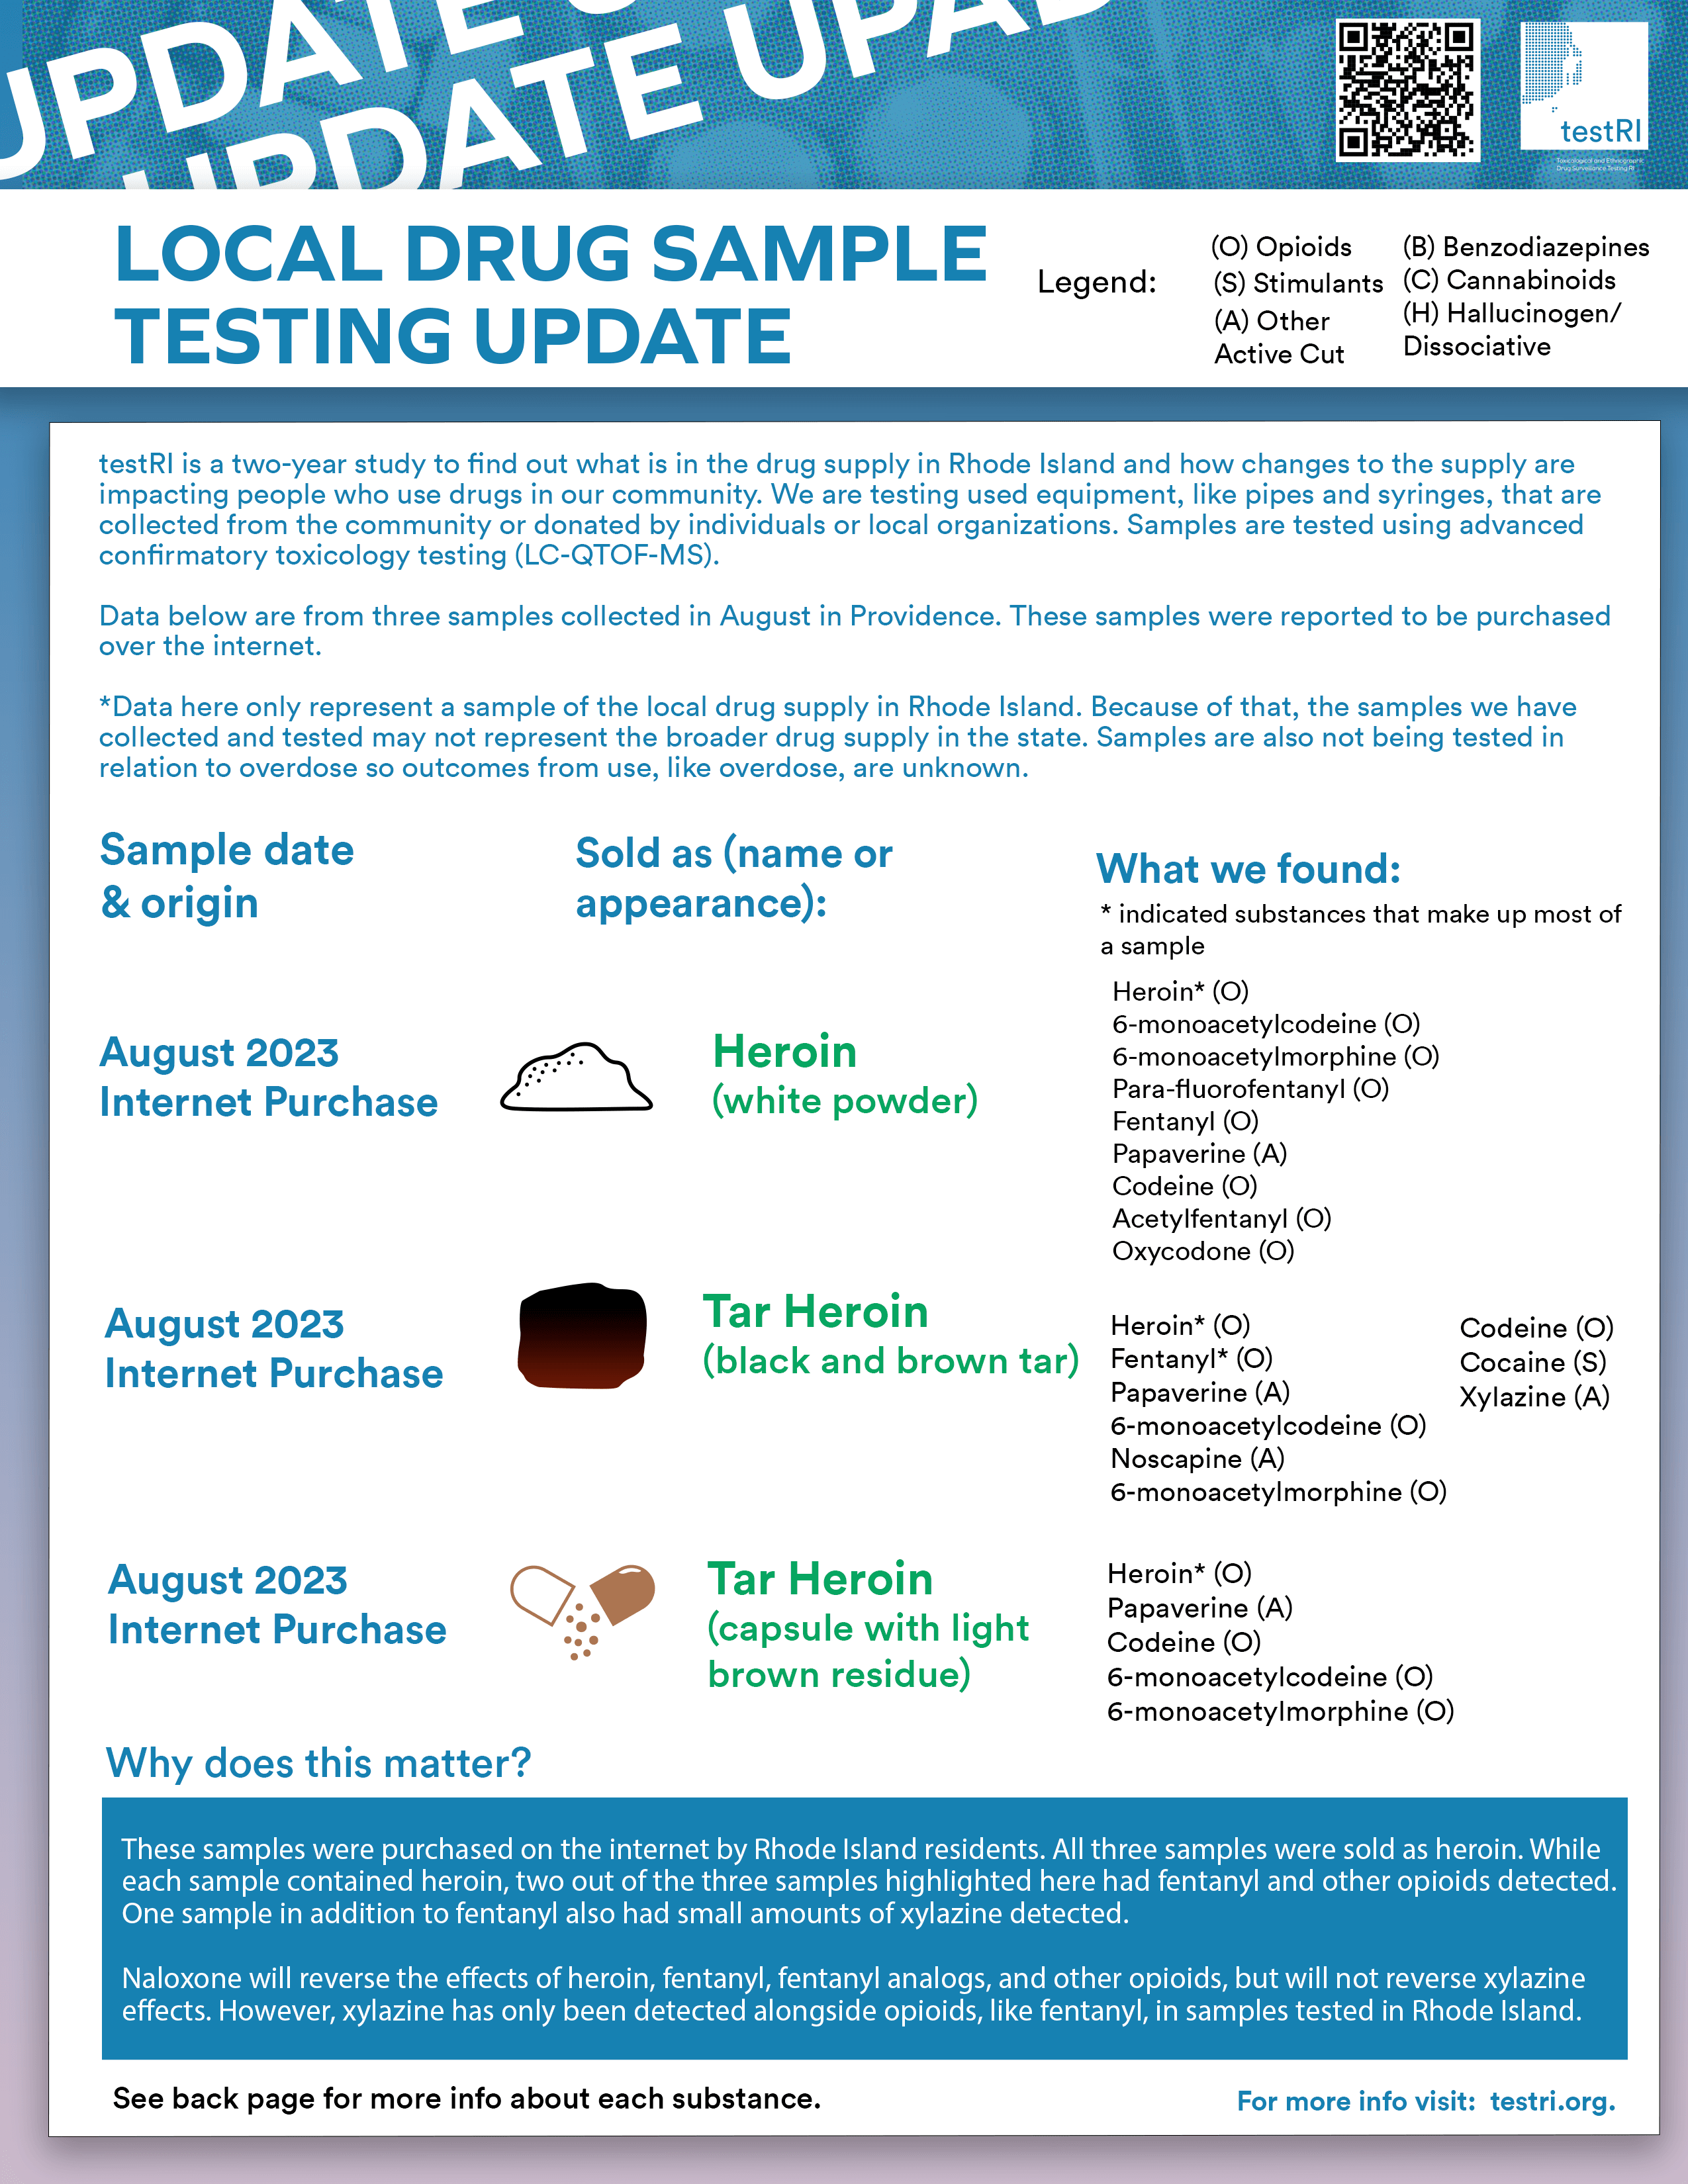 August 2023 Supply Update